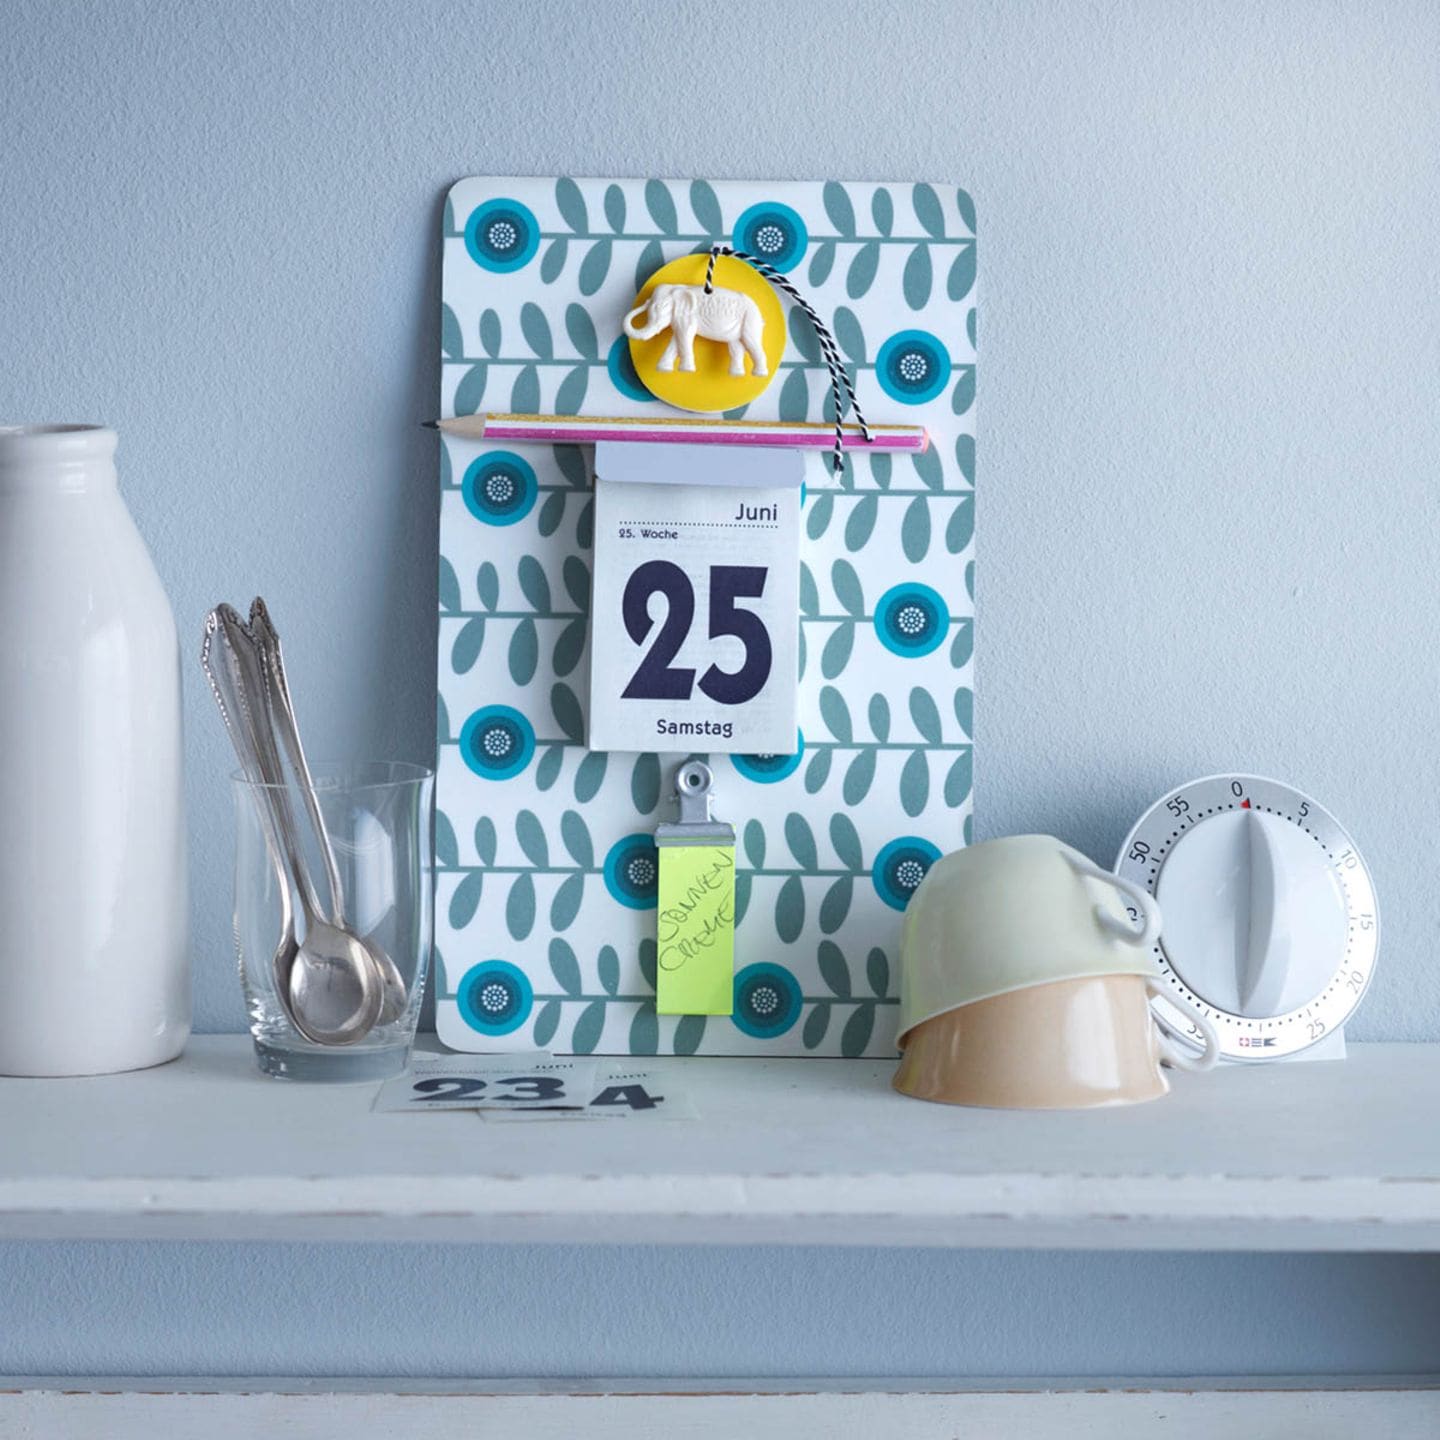 Ein Kalender aus einem gemusterten Brettchen. Ein Minikalender und eine Klammer für ein Notizblock sind daran befestigt